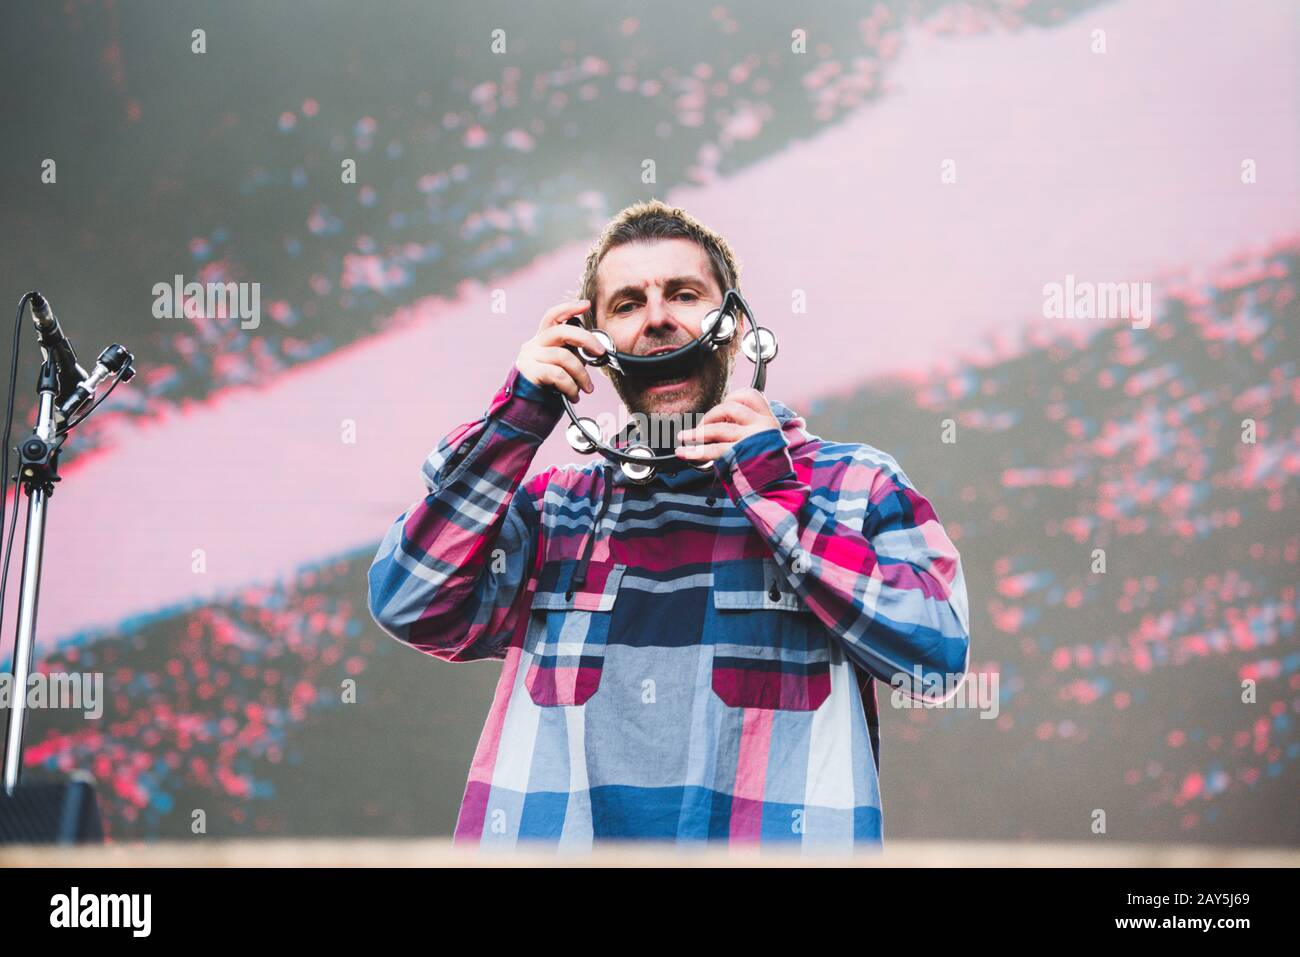 Liam Gallagher vive a Locarno, Svizzera 2019 Foto Stock